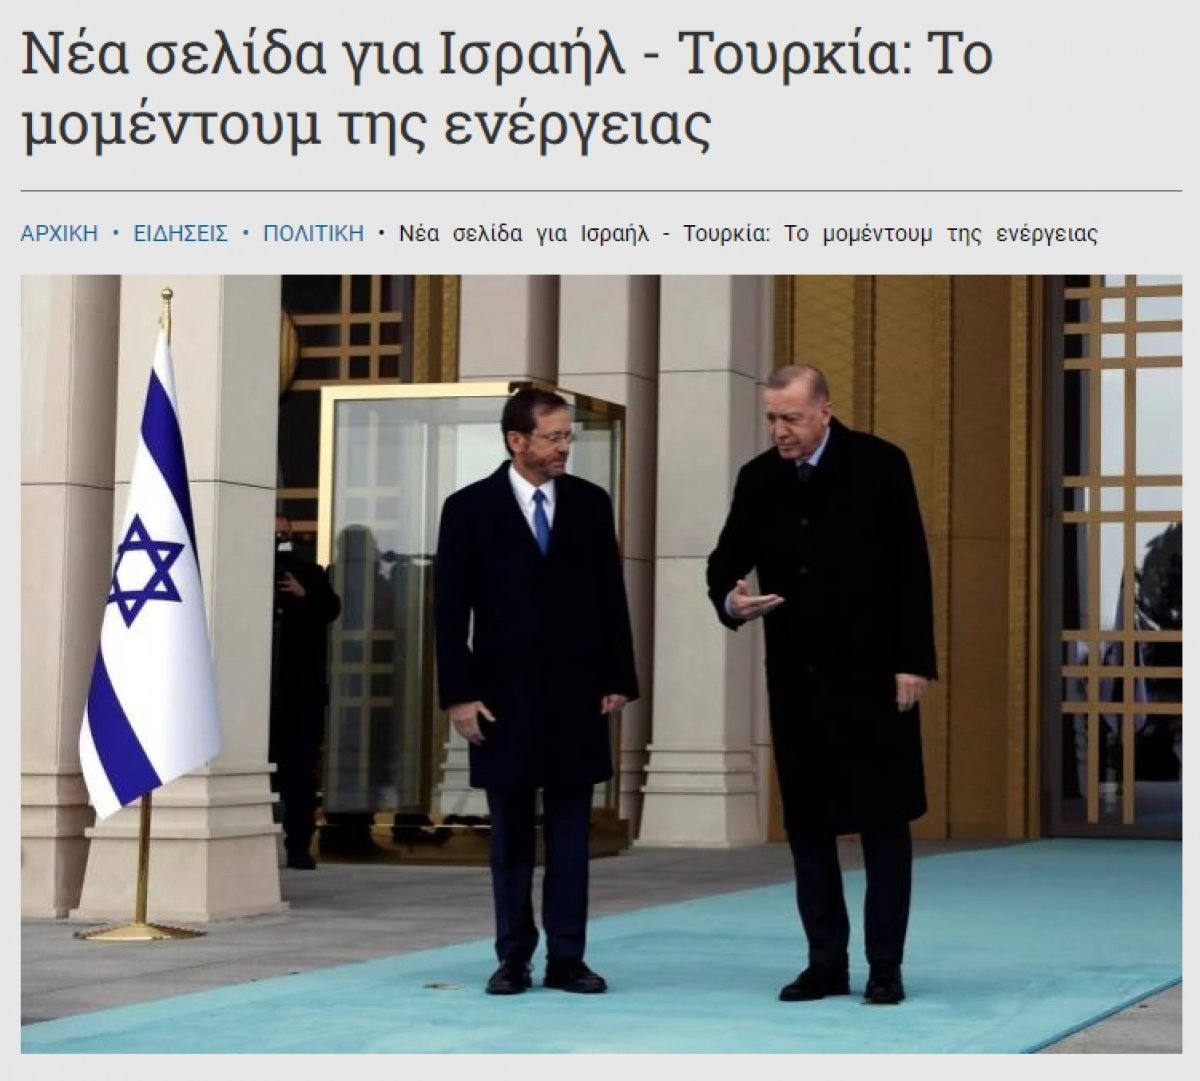 Ιδιαίτερη προσοχή στη σύνοδο κορυφής Τουρκίας-Ισραήλ στην Ελλάδα #1